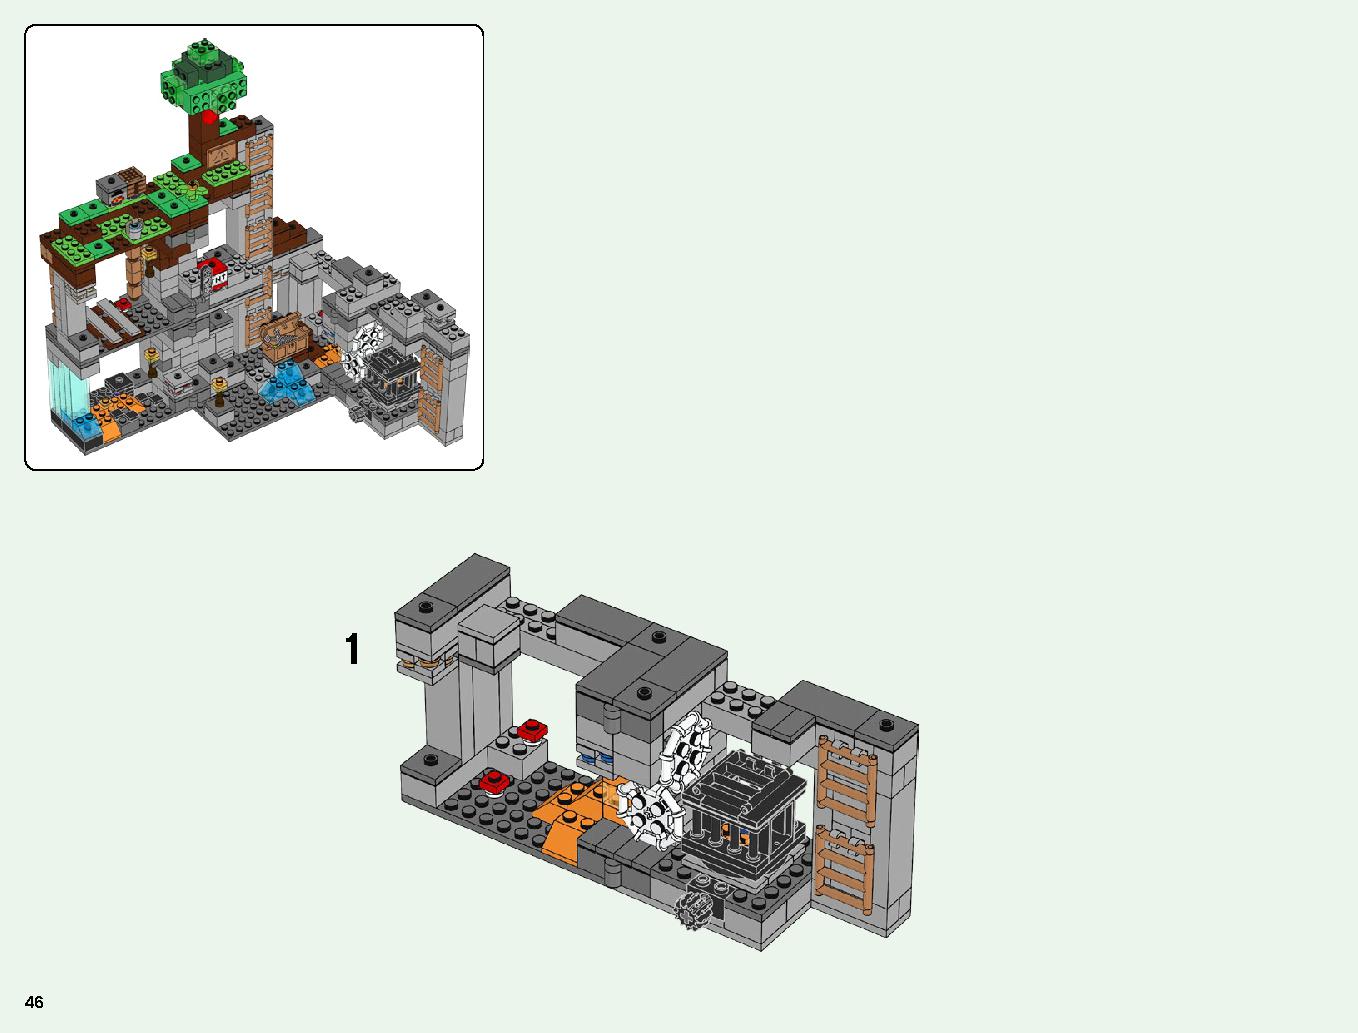 ベッドロックの冒険 21147 レゴの商品情報 レゴの説明書・組立方法 46 page